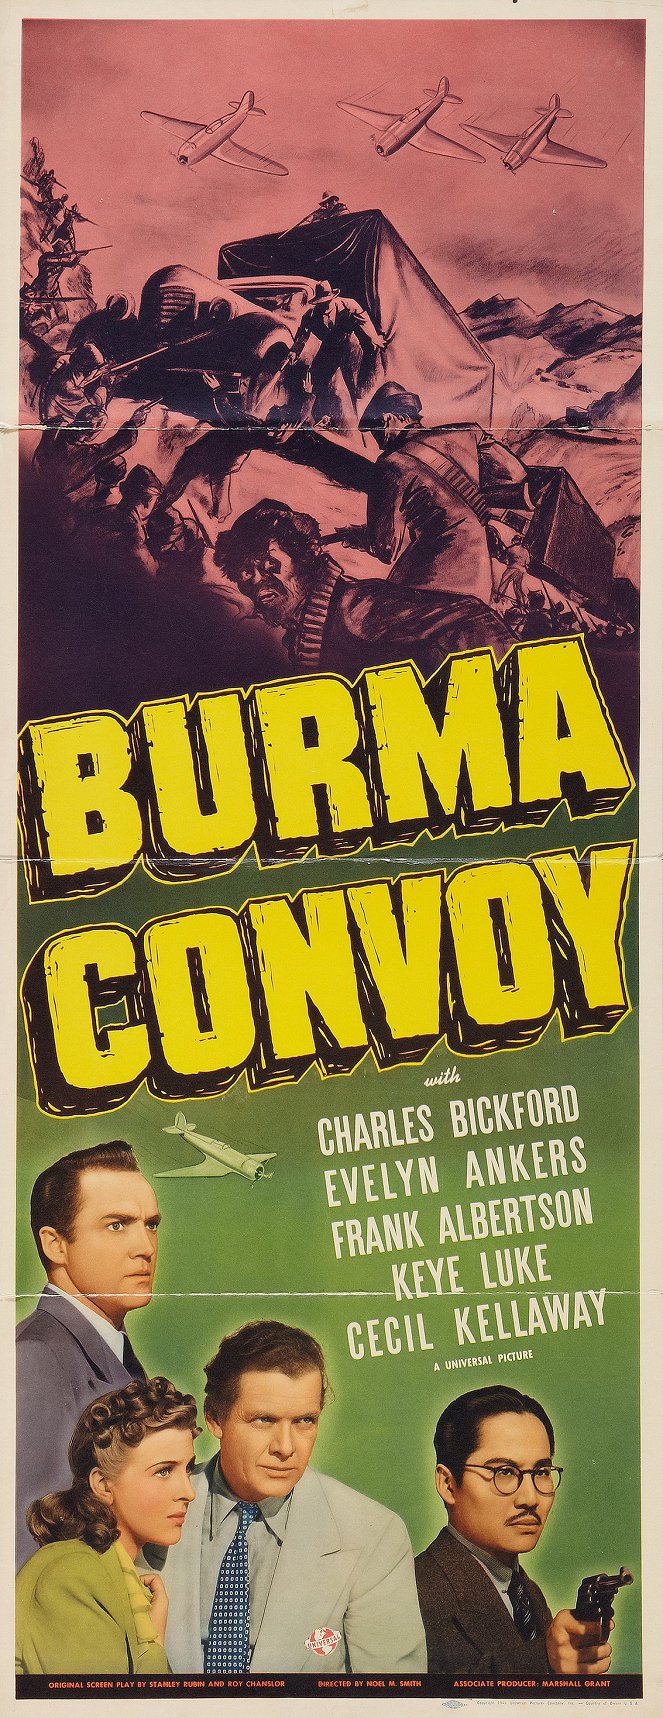 Burma Convoy - Plakáty